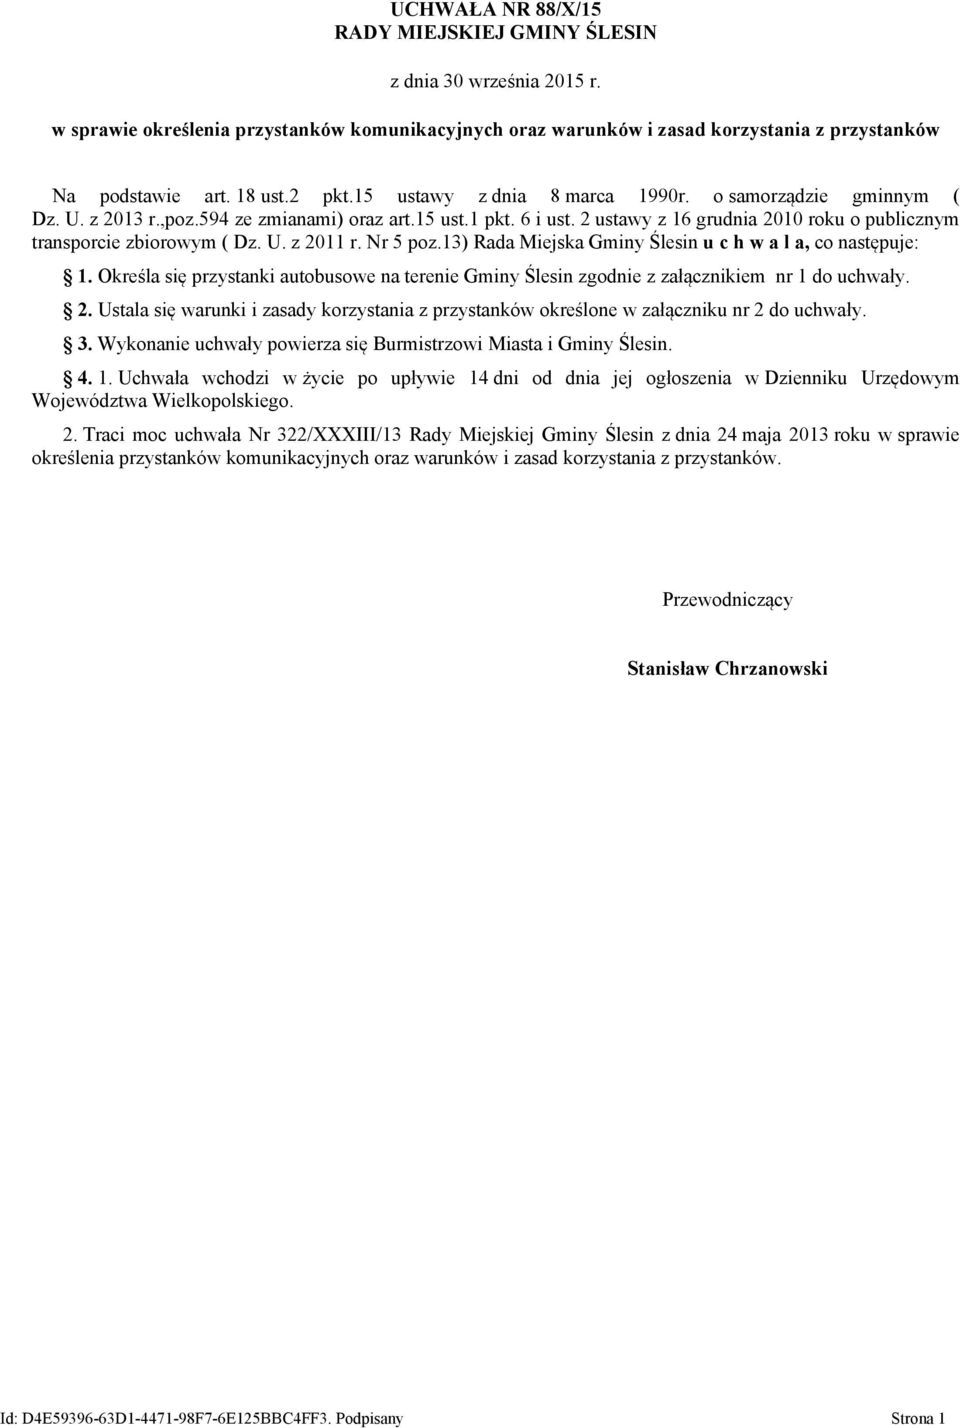 2 ustawy z 16 grudnia 2010 roku o publicznym transporcie zbiorowym ( Dz. U. z 2011 r. Nr 5 poz.13) Rada Miejska Gminy Ślesin u c h w a l a, co następuje: 1.